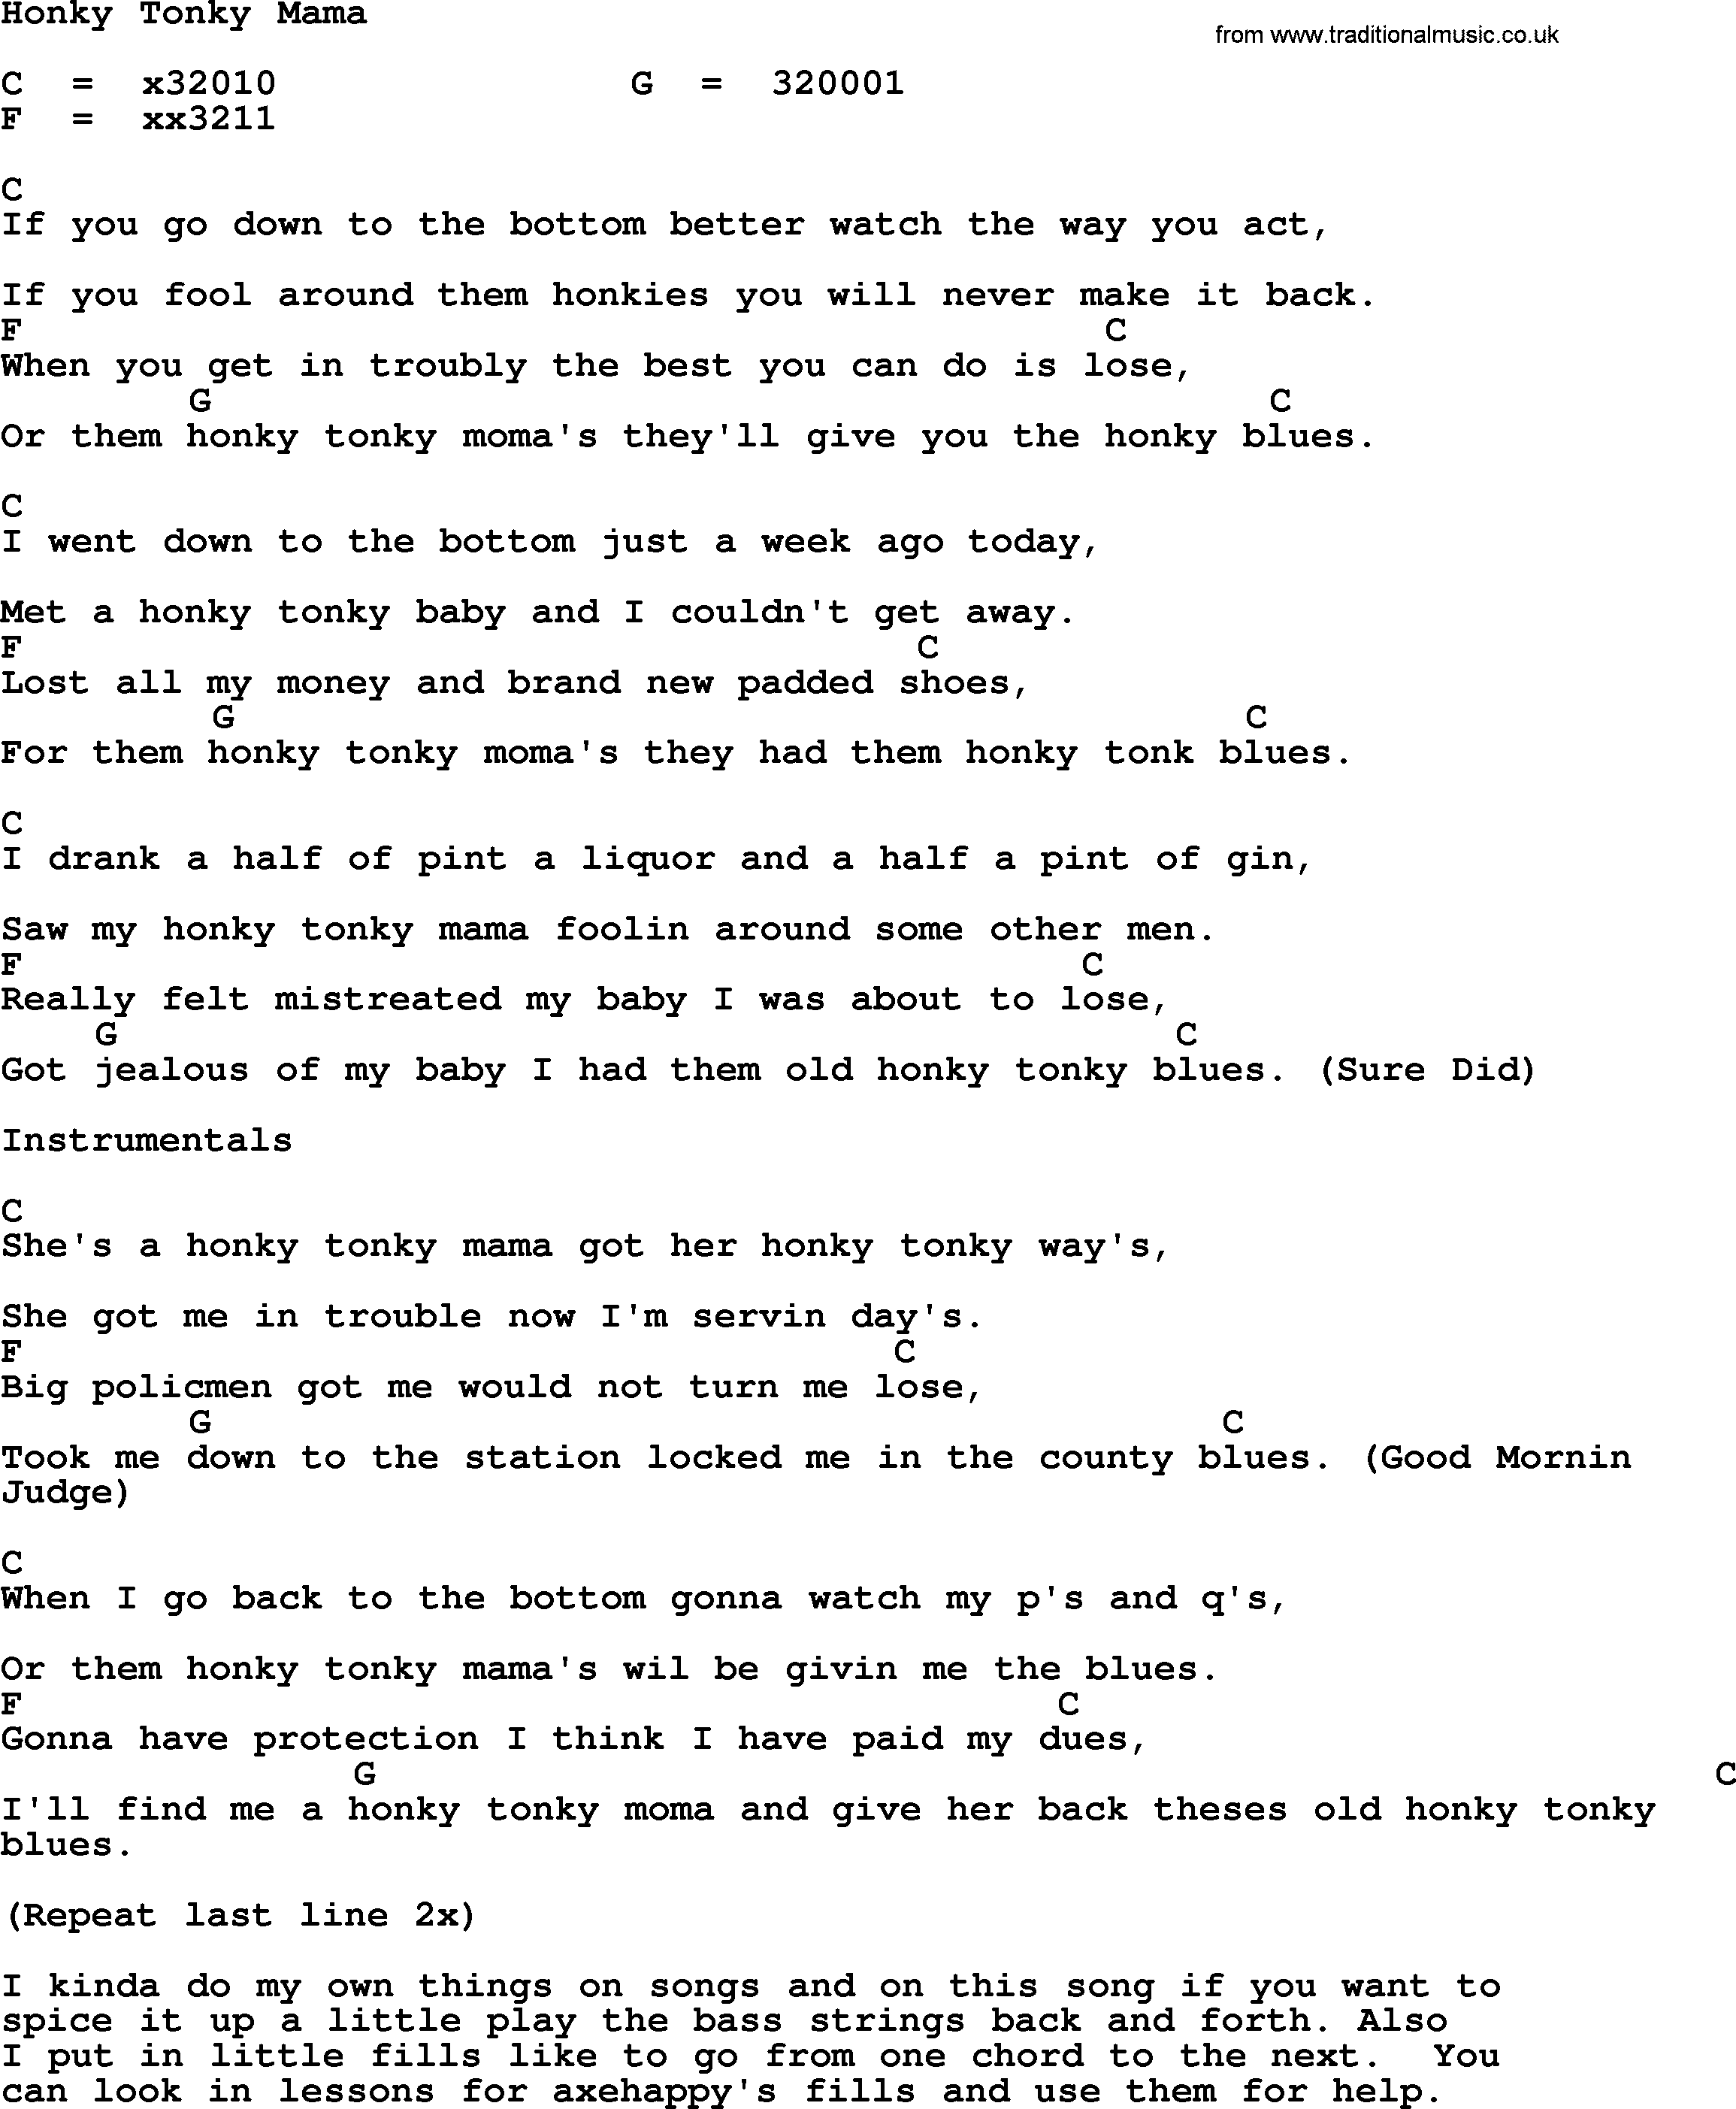 Merle Haggard song: Honky Tonky Mama, lyrics and chords